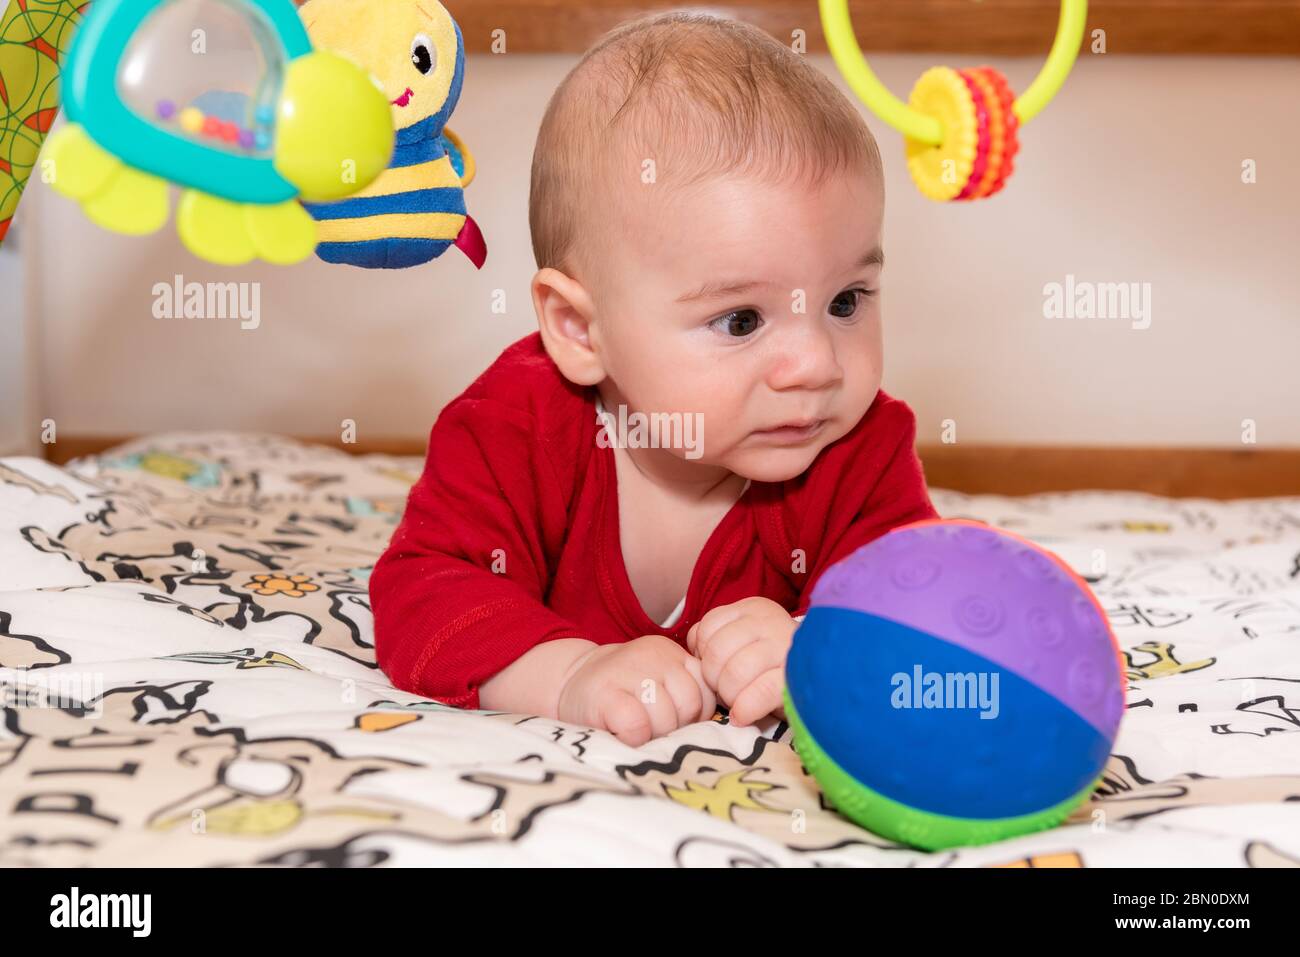 Un petit garçon mignon pendant le ventre, regardant l'appareil photo. enfant de 6 mois avec expression de curiosité sur son visage entouré de jouets colorés. Banque D'Images